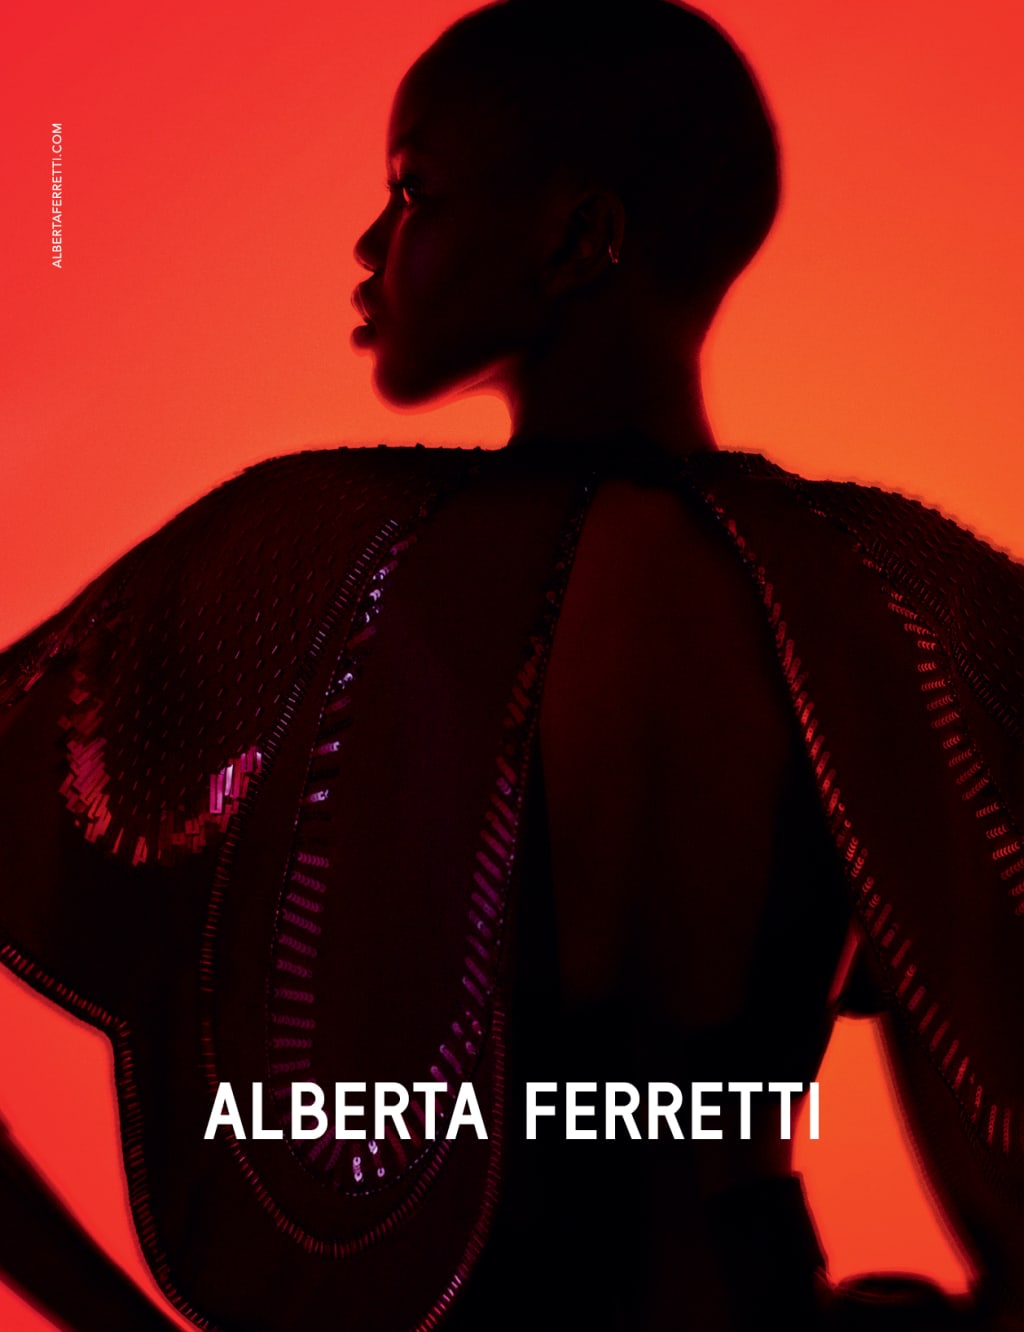 Alberta Ferretti Spring Summer 2020 Campaign